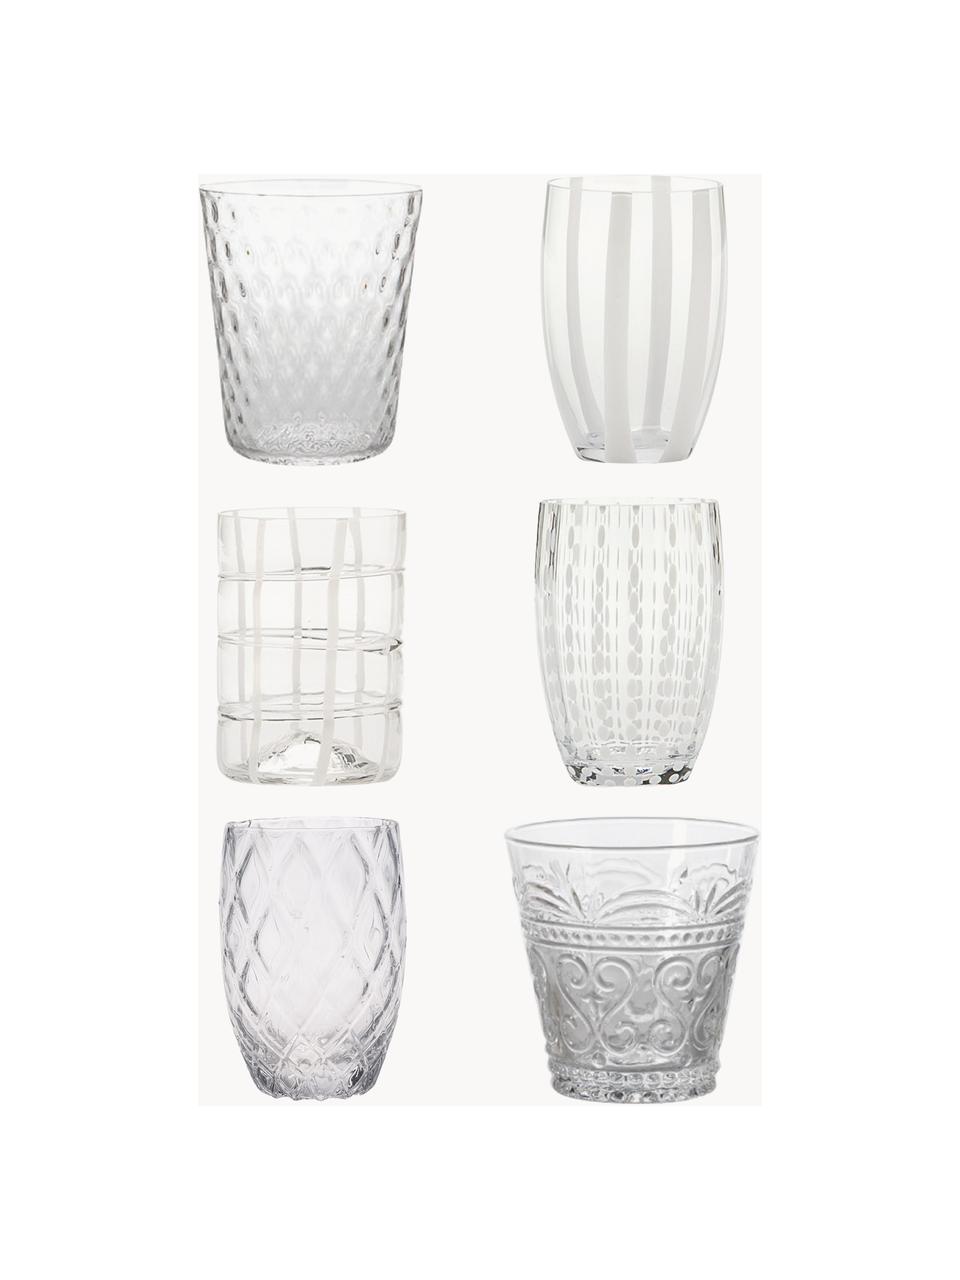 Handgefertigte Wassergläser Melting, 6er-Set, Glas, Weiss, transparent, Set mit verschiedenen Grössen